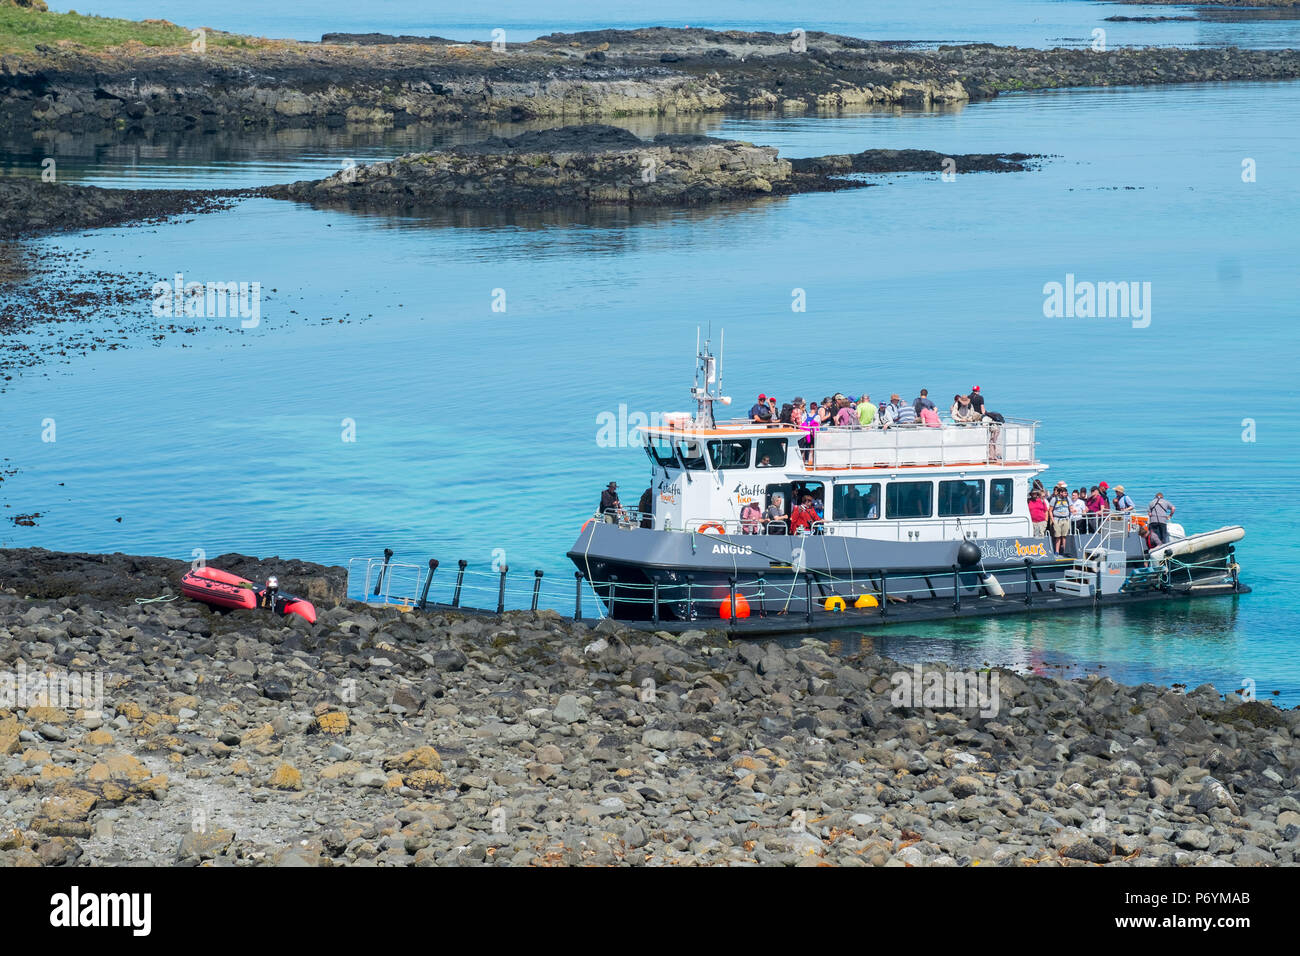 Barco mediante un pontón flotante para acceder a Lunga, Islas Treshnish, Escocia. No hay ninguna base permanente o grada en la isla. Foto de stock